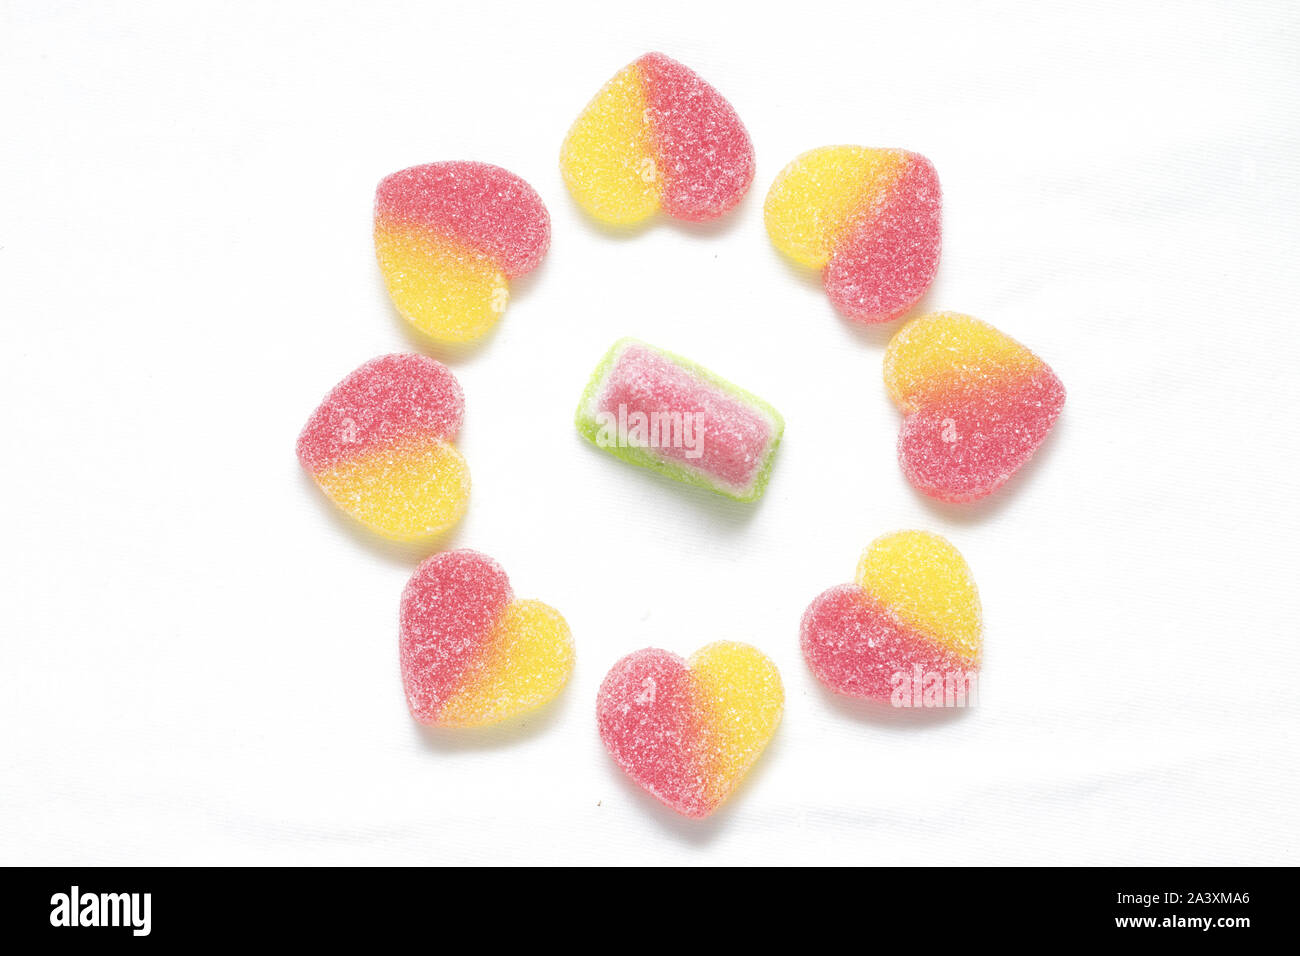 Les bonbons en forme de coeur jelly spécialement organisée pour la Saint-Valentin et les anniversaires et quand vous voulez montrer votre amour à l'un de vos amis Banque D'Images